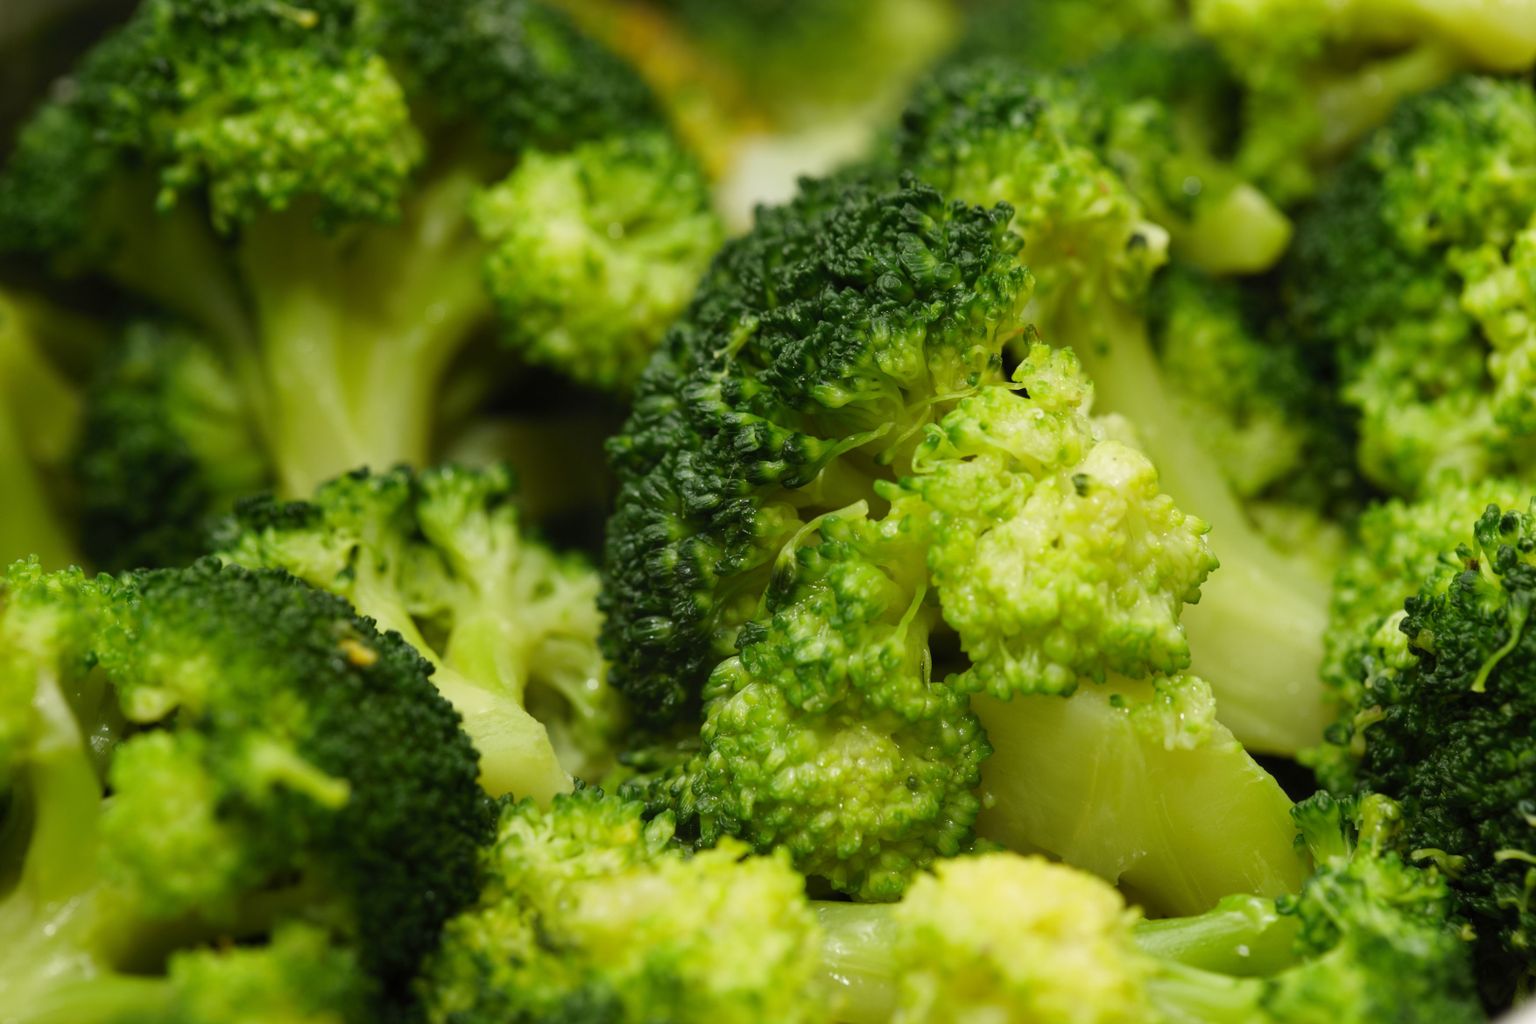 Kuigi brokoli on tervislik, ei tasu sedagi liigselt süüa, kuna see võib teha nii haigele kui ka tervele inimesele kasu asemel kahju.